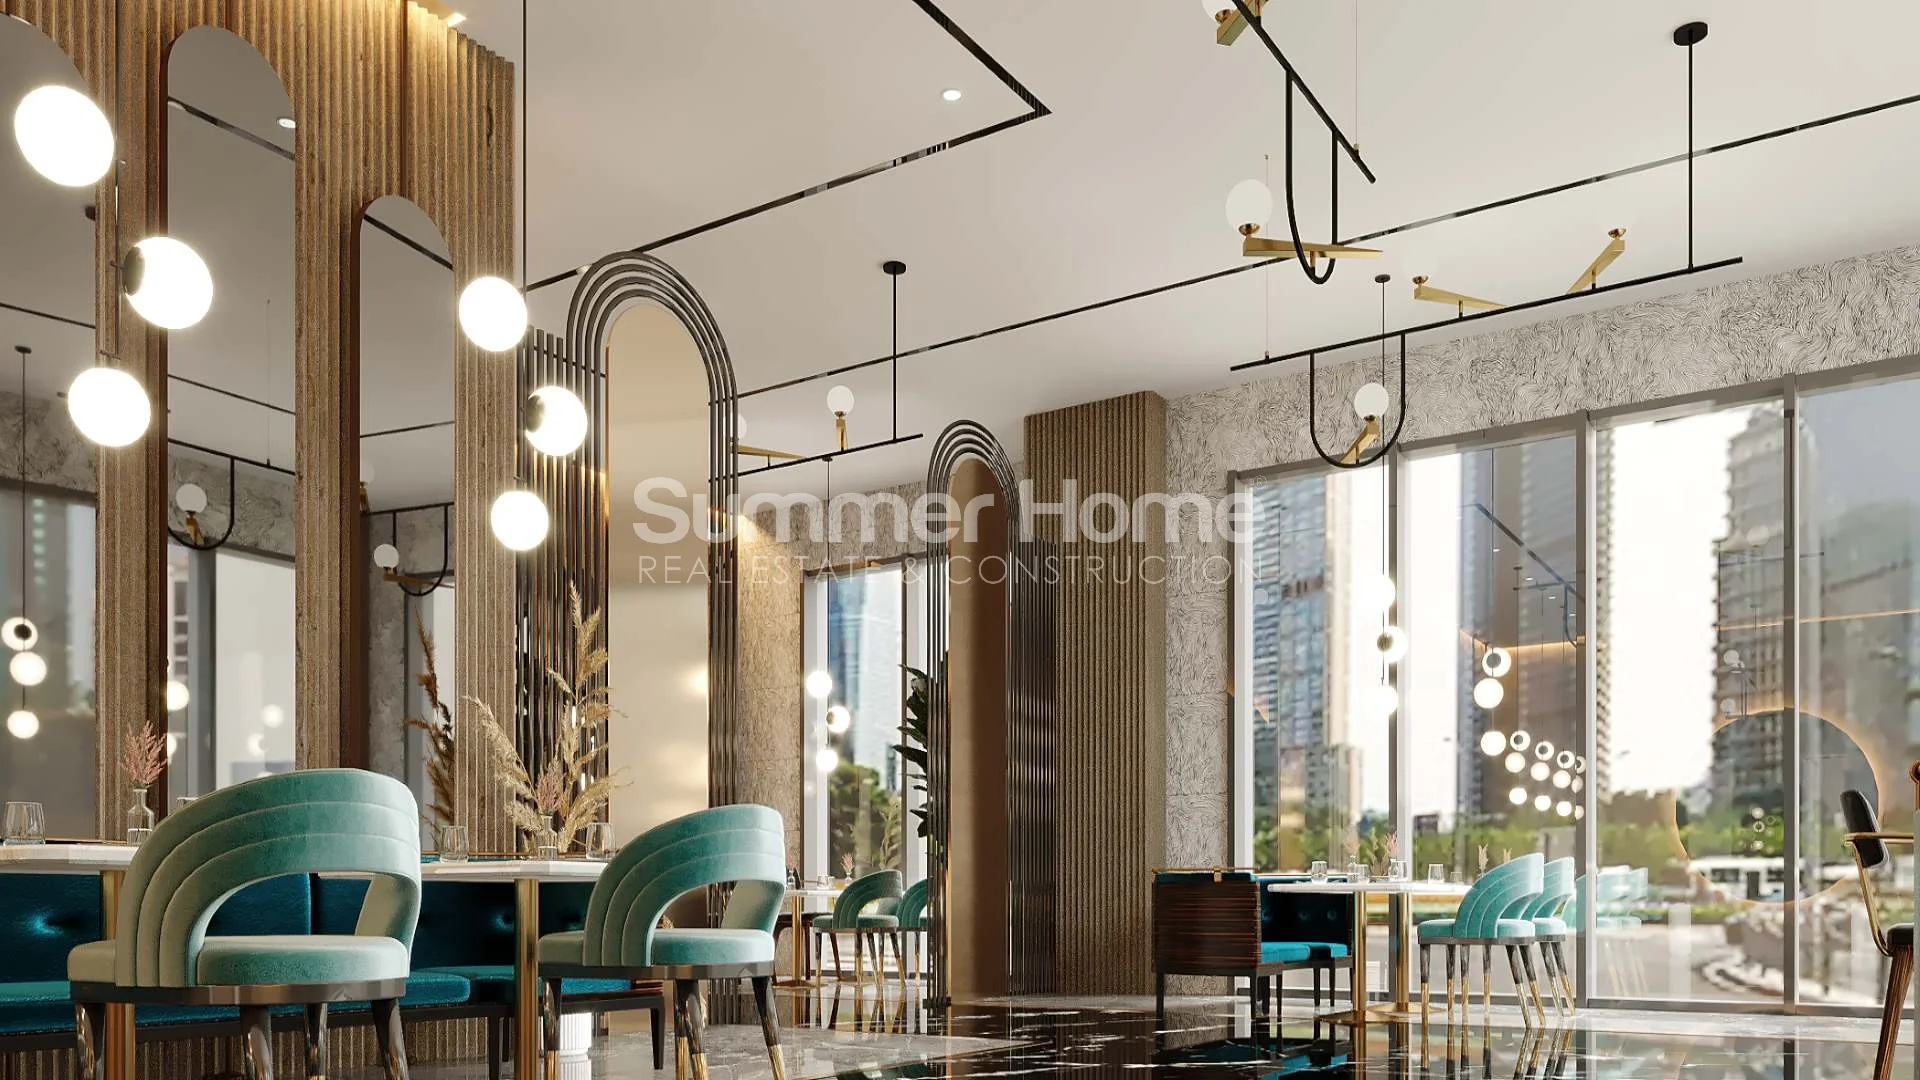 Apartmani modernog dizajna luksuznog stila  u Tosmuru  Društveni sadržaji  - 21